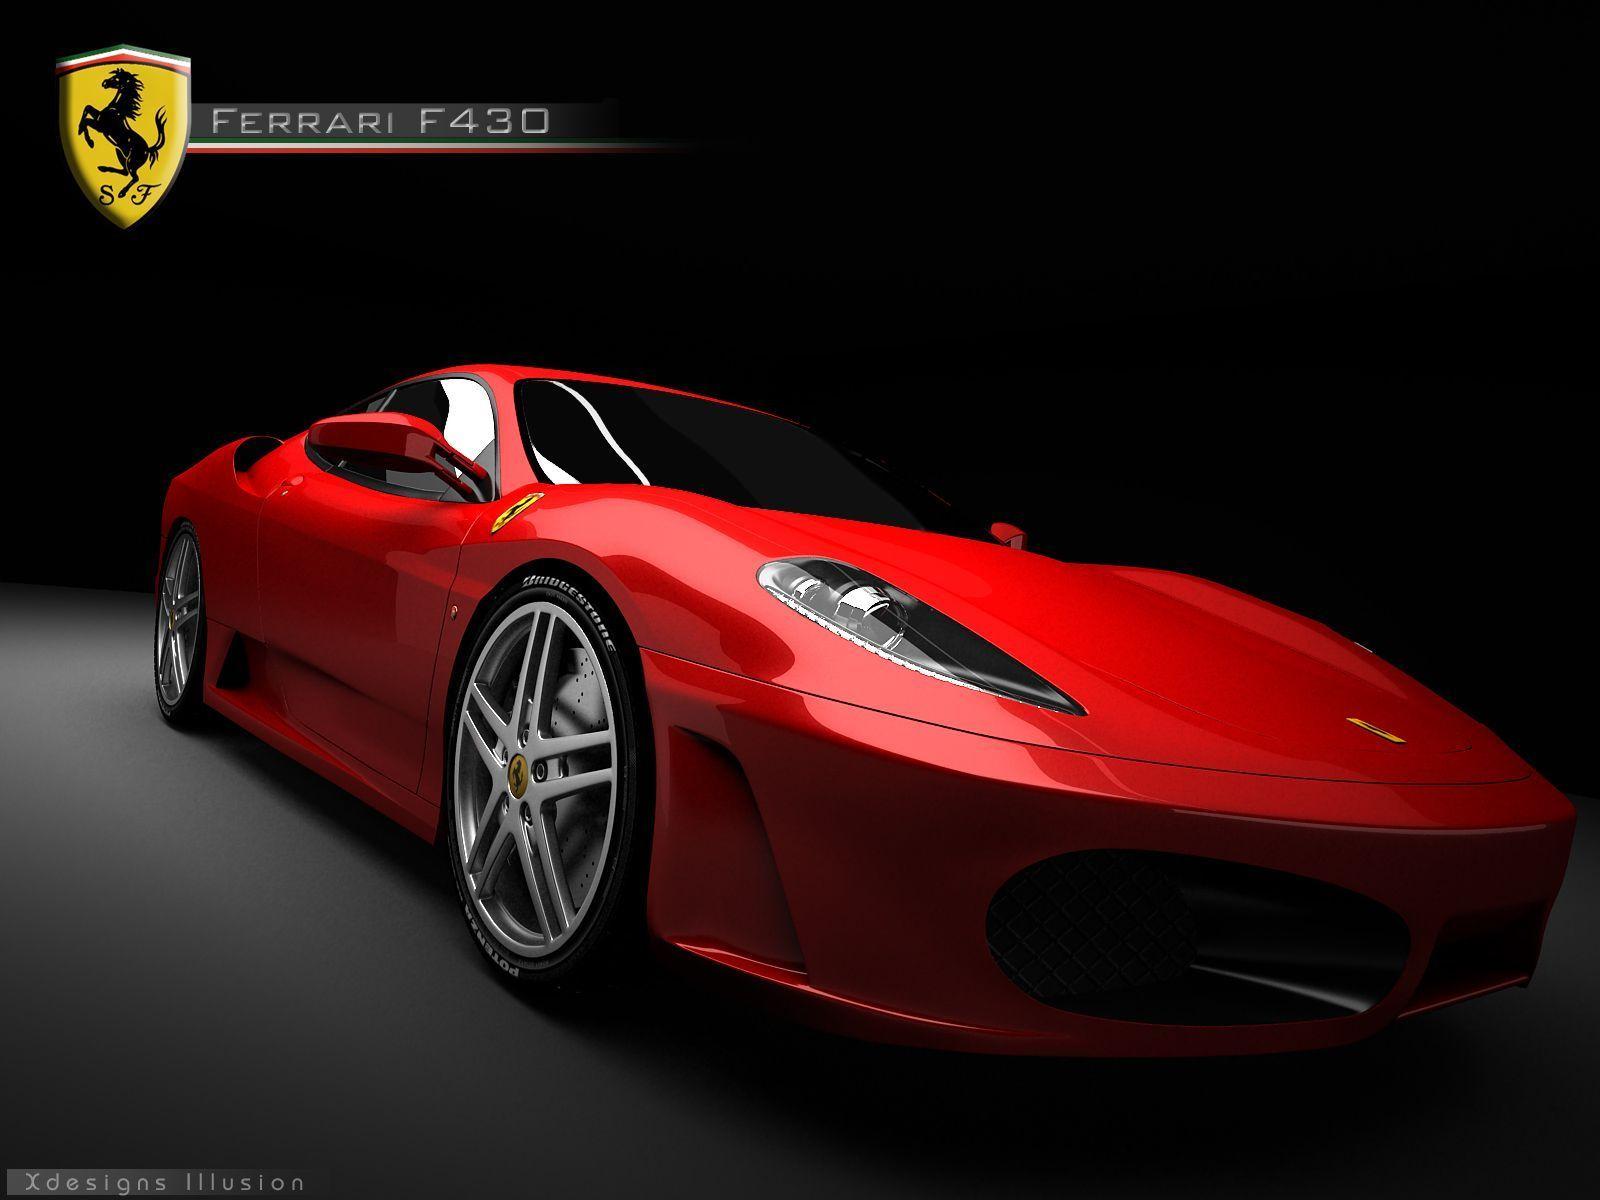 Ferrari F430 Wallpaper Image & Picture